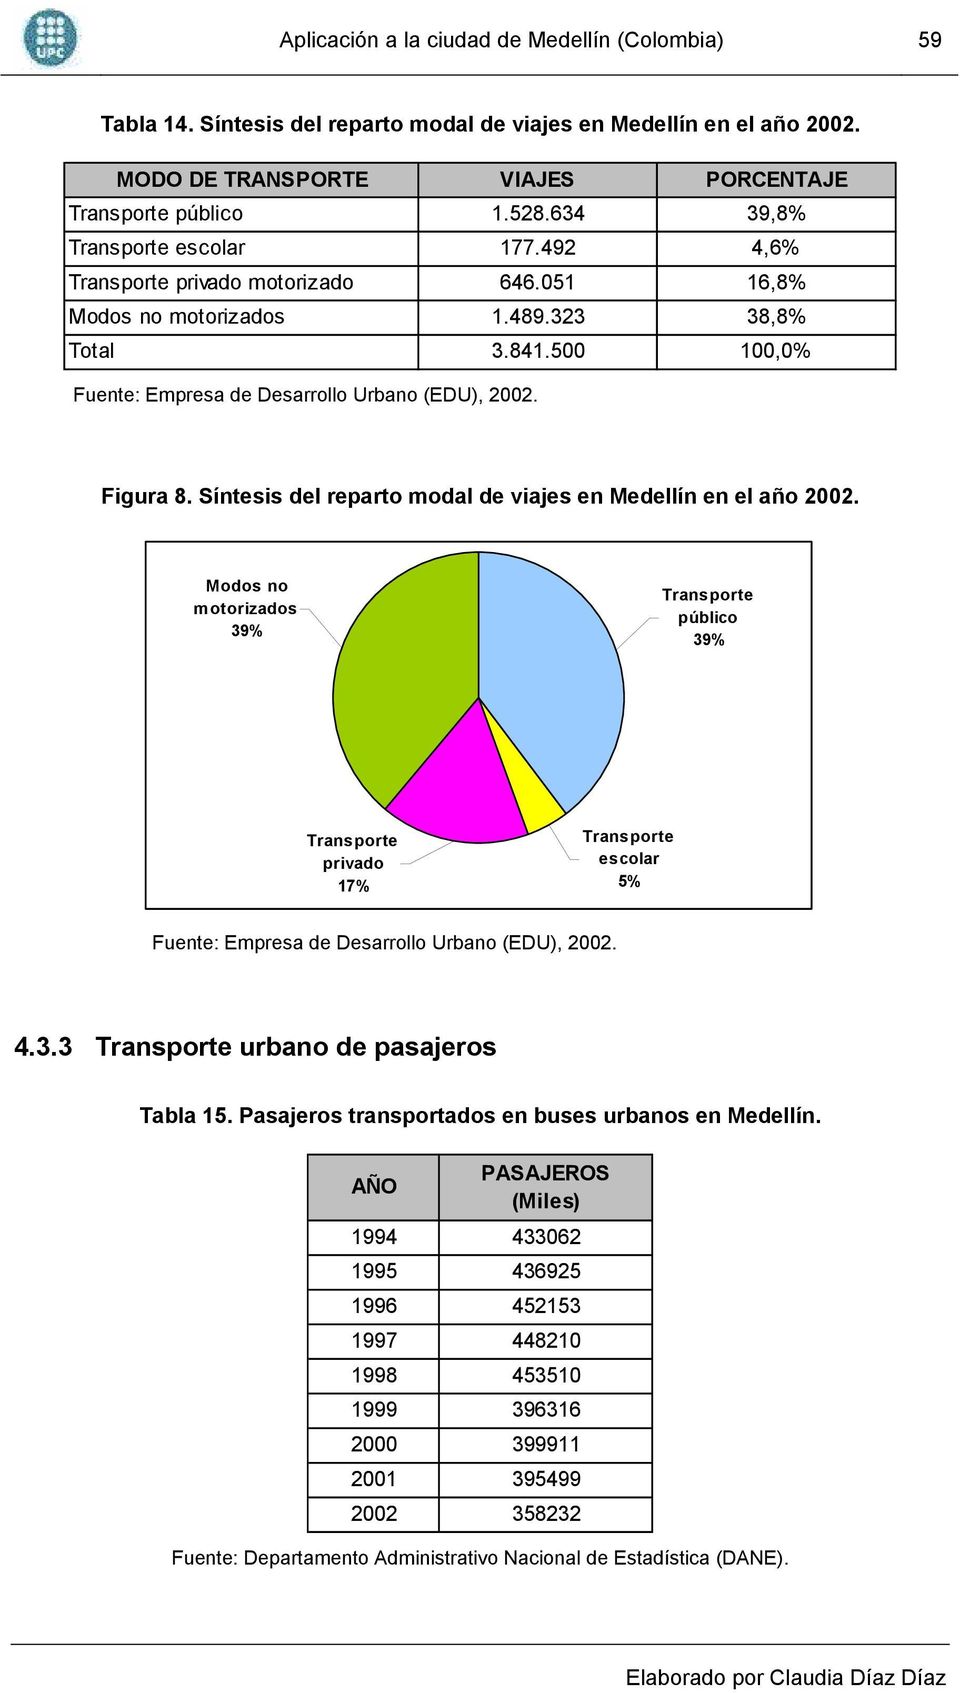 Figura 8. Síntesis del reparto modal de viajes en Medellín en el año 2002.